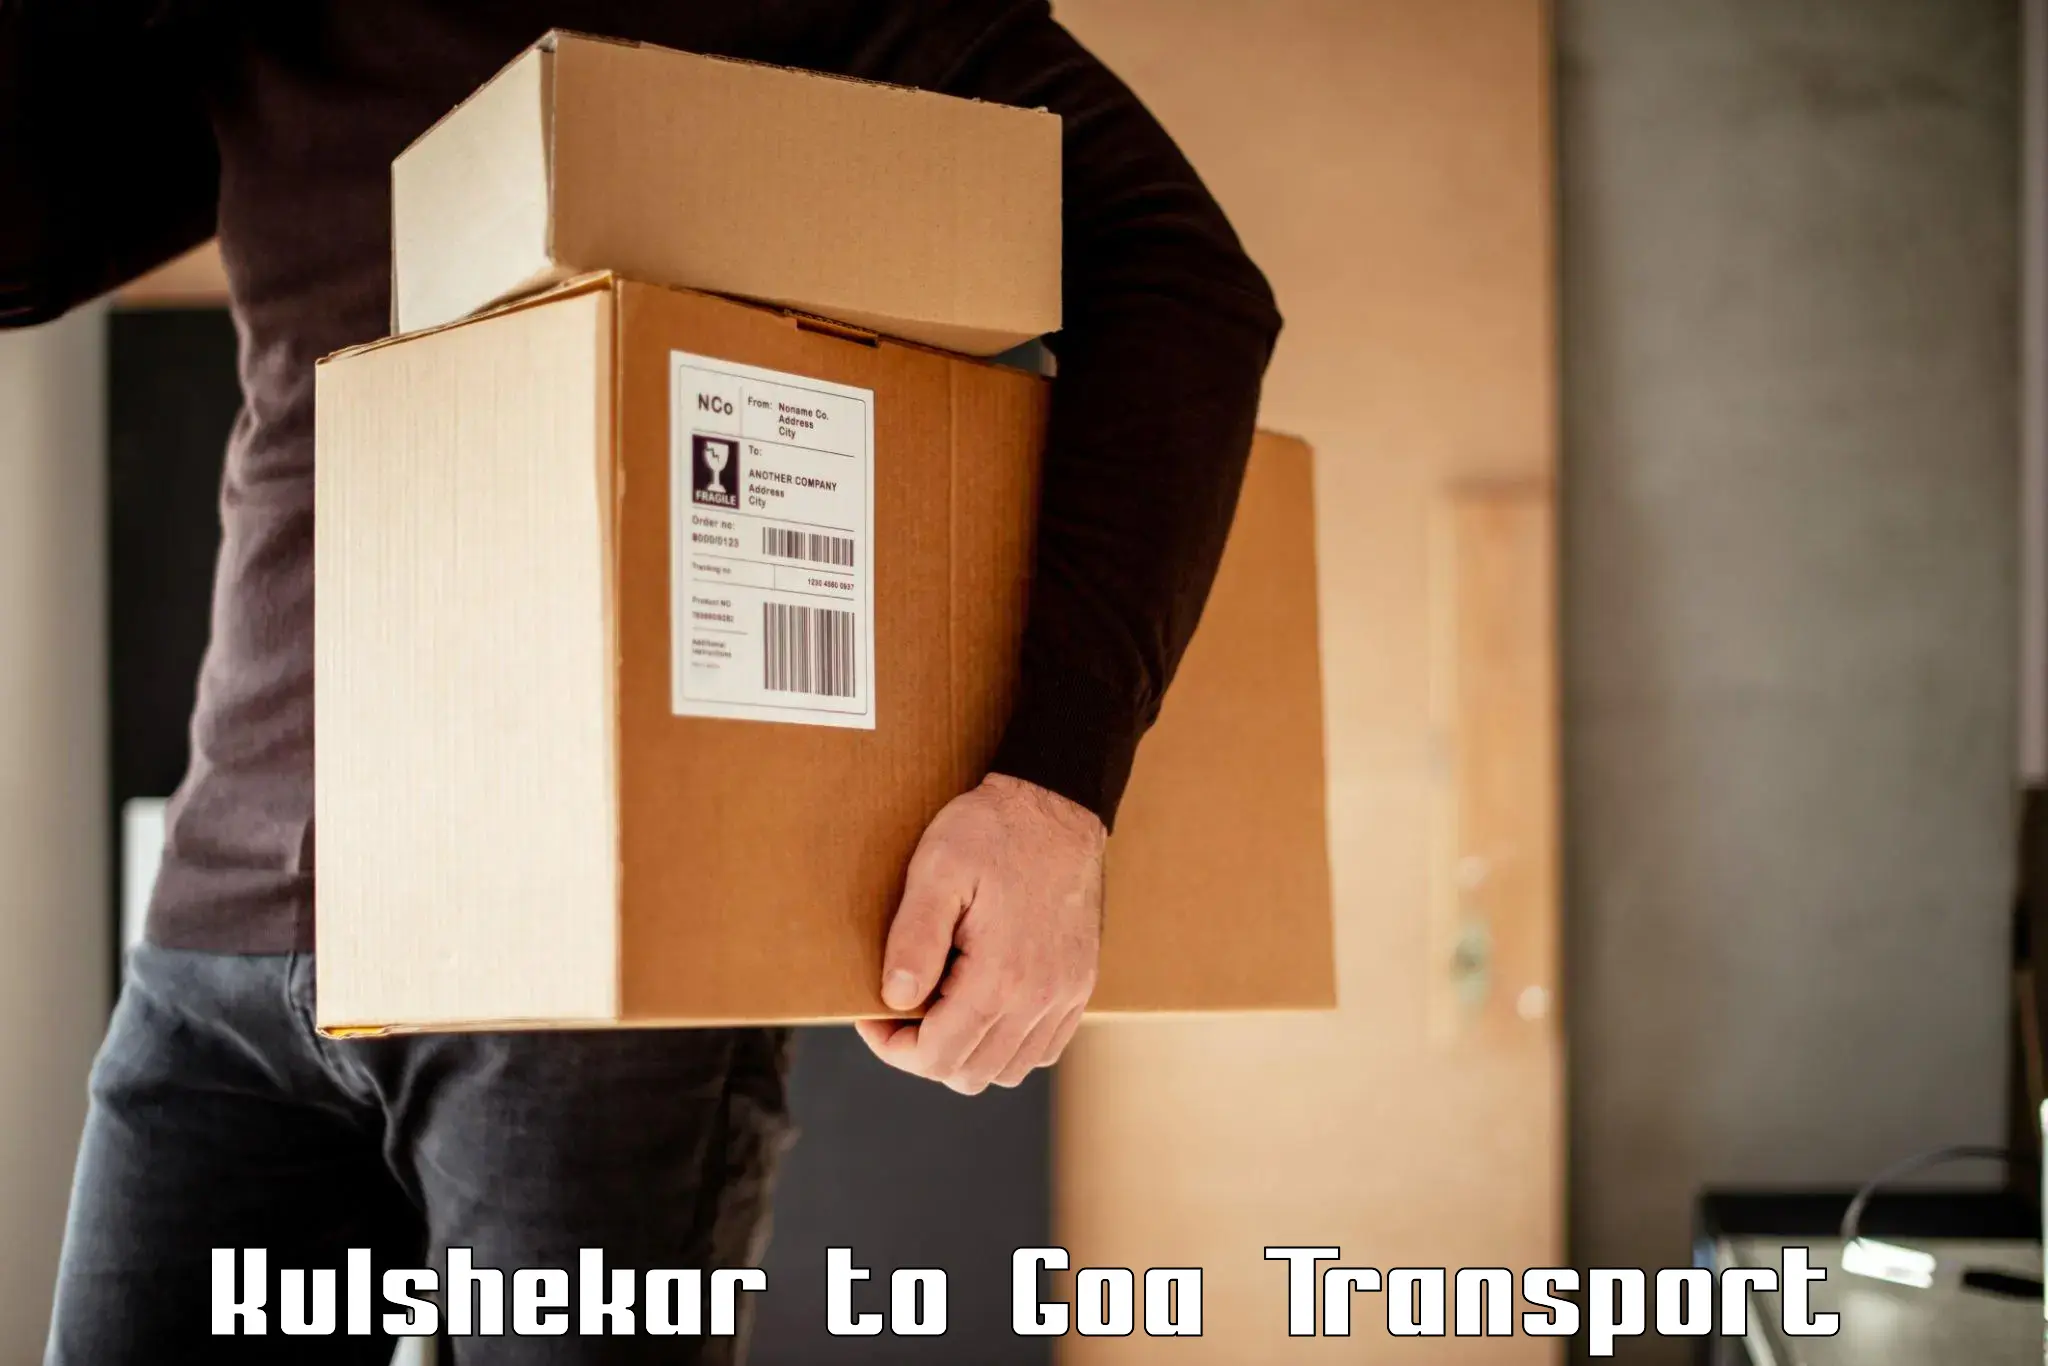 Online transport in Kulshekar to NIT Goa